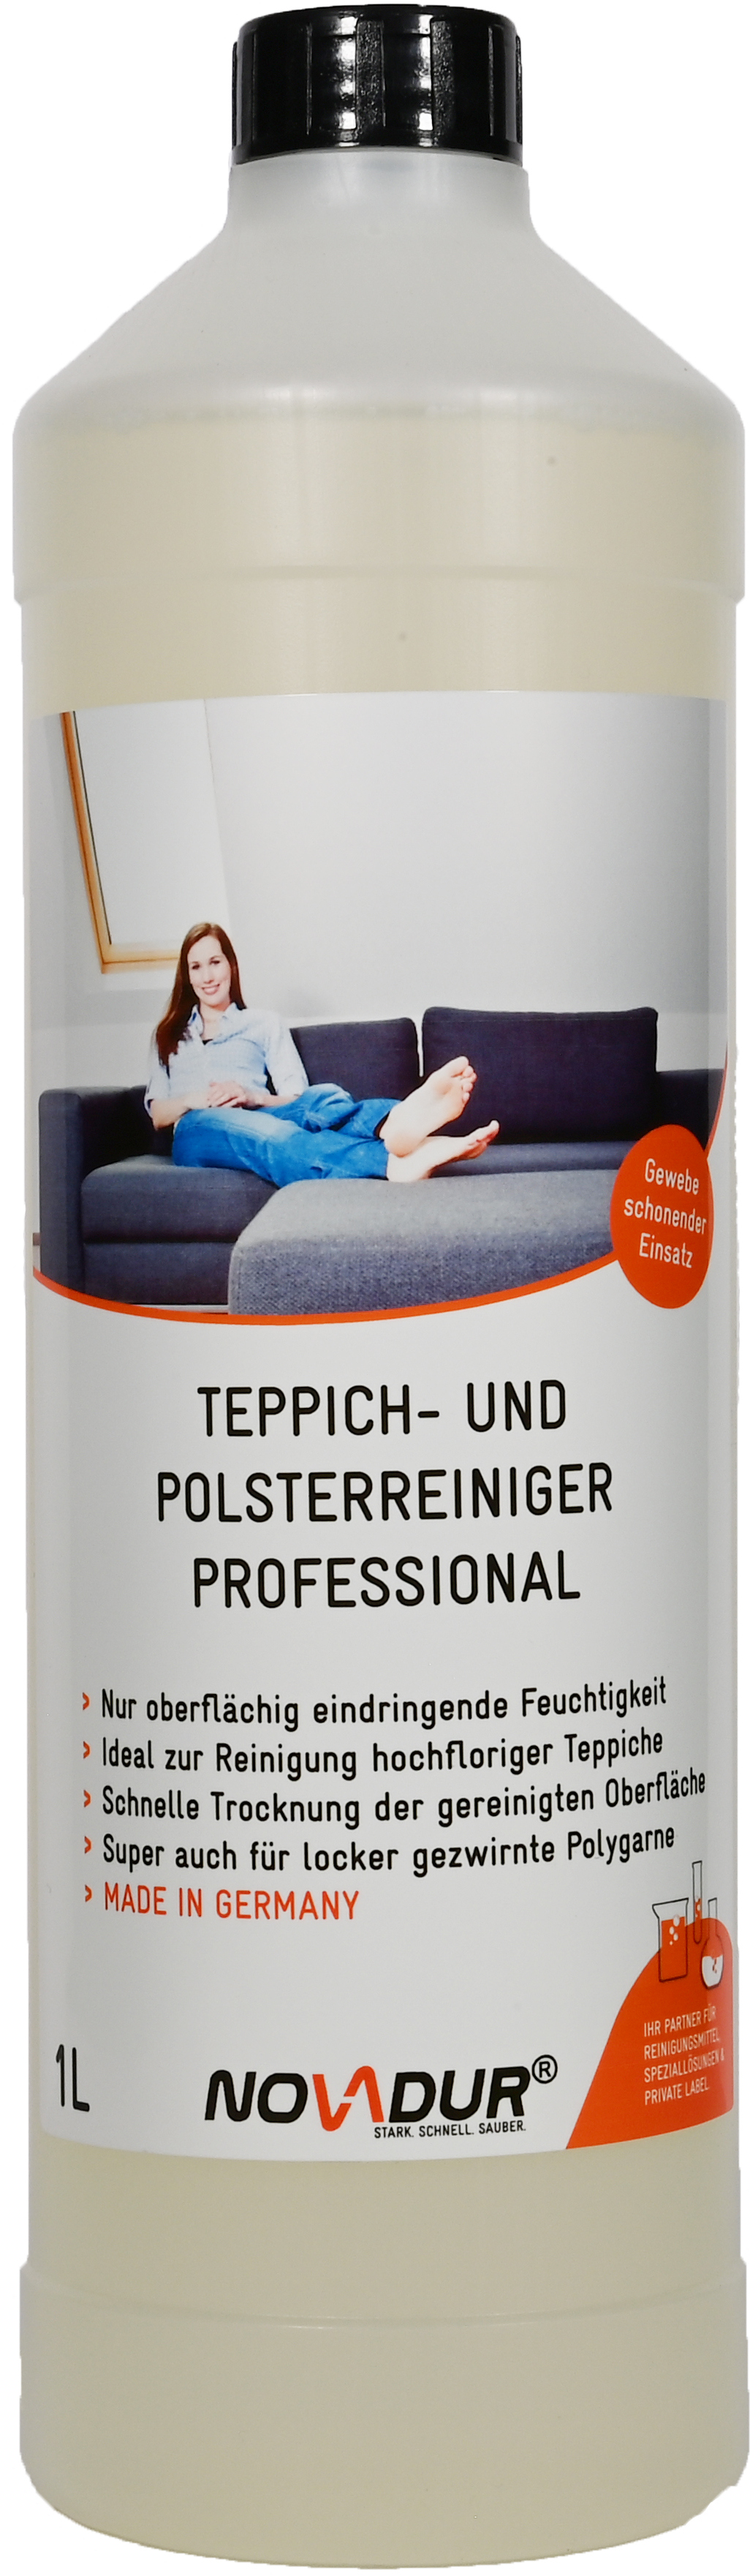 Teppich- & Polsterreiniger Professional